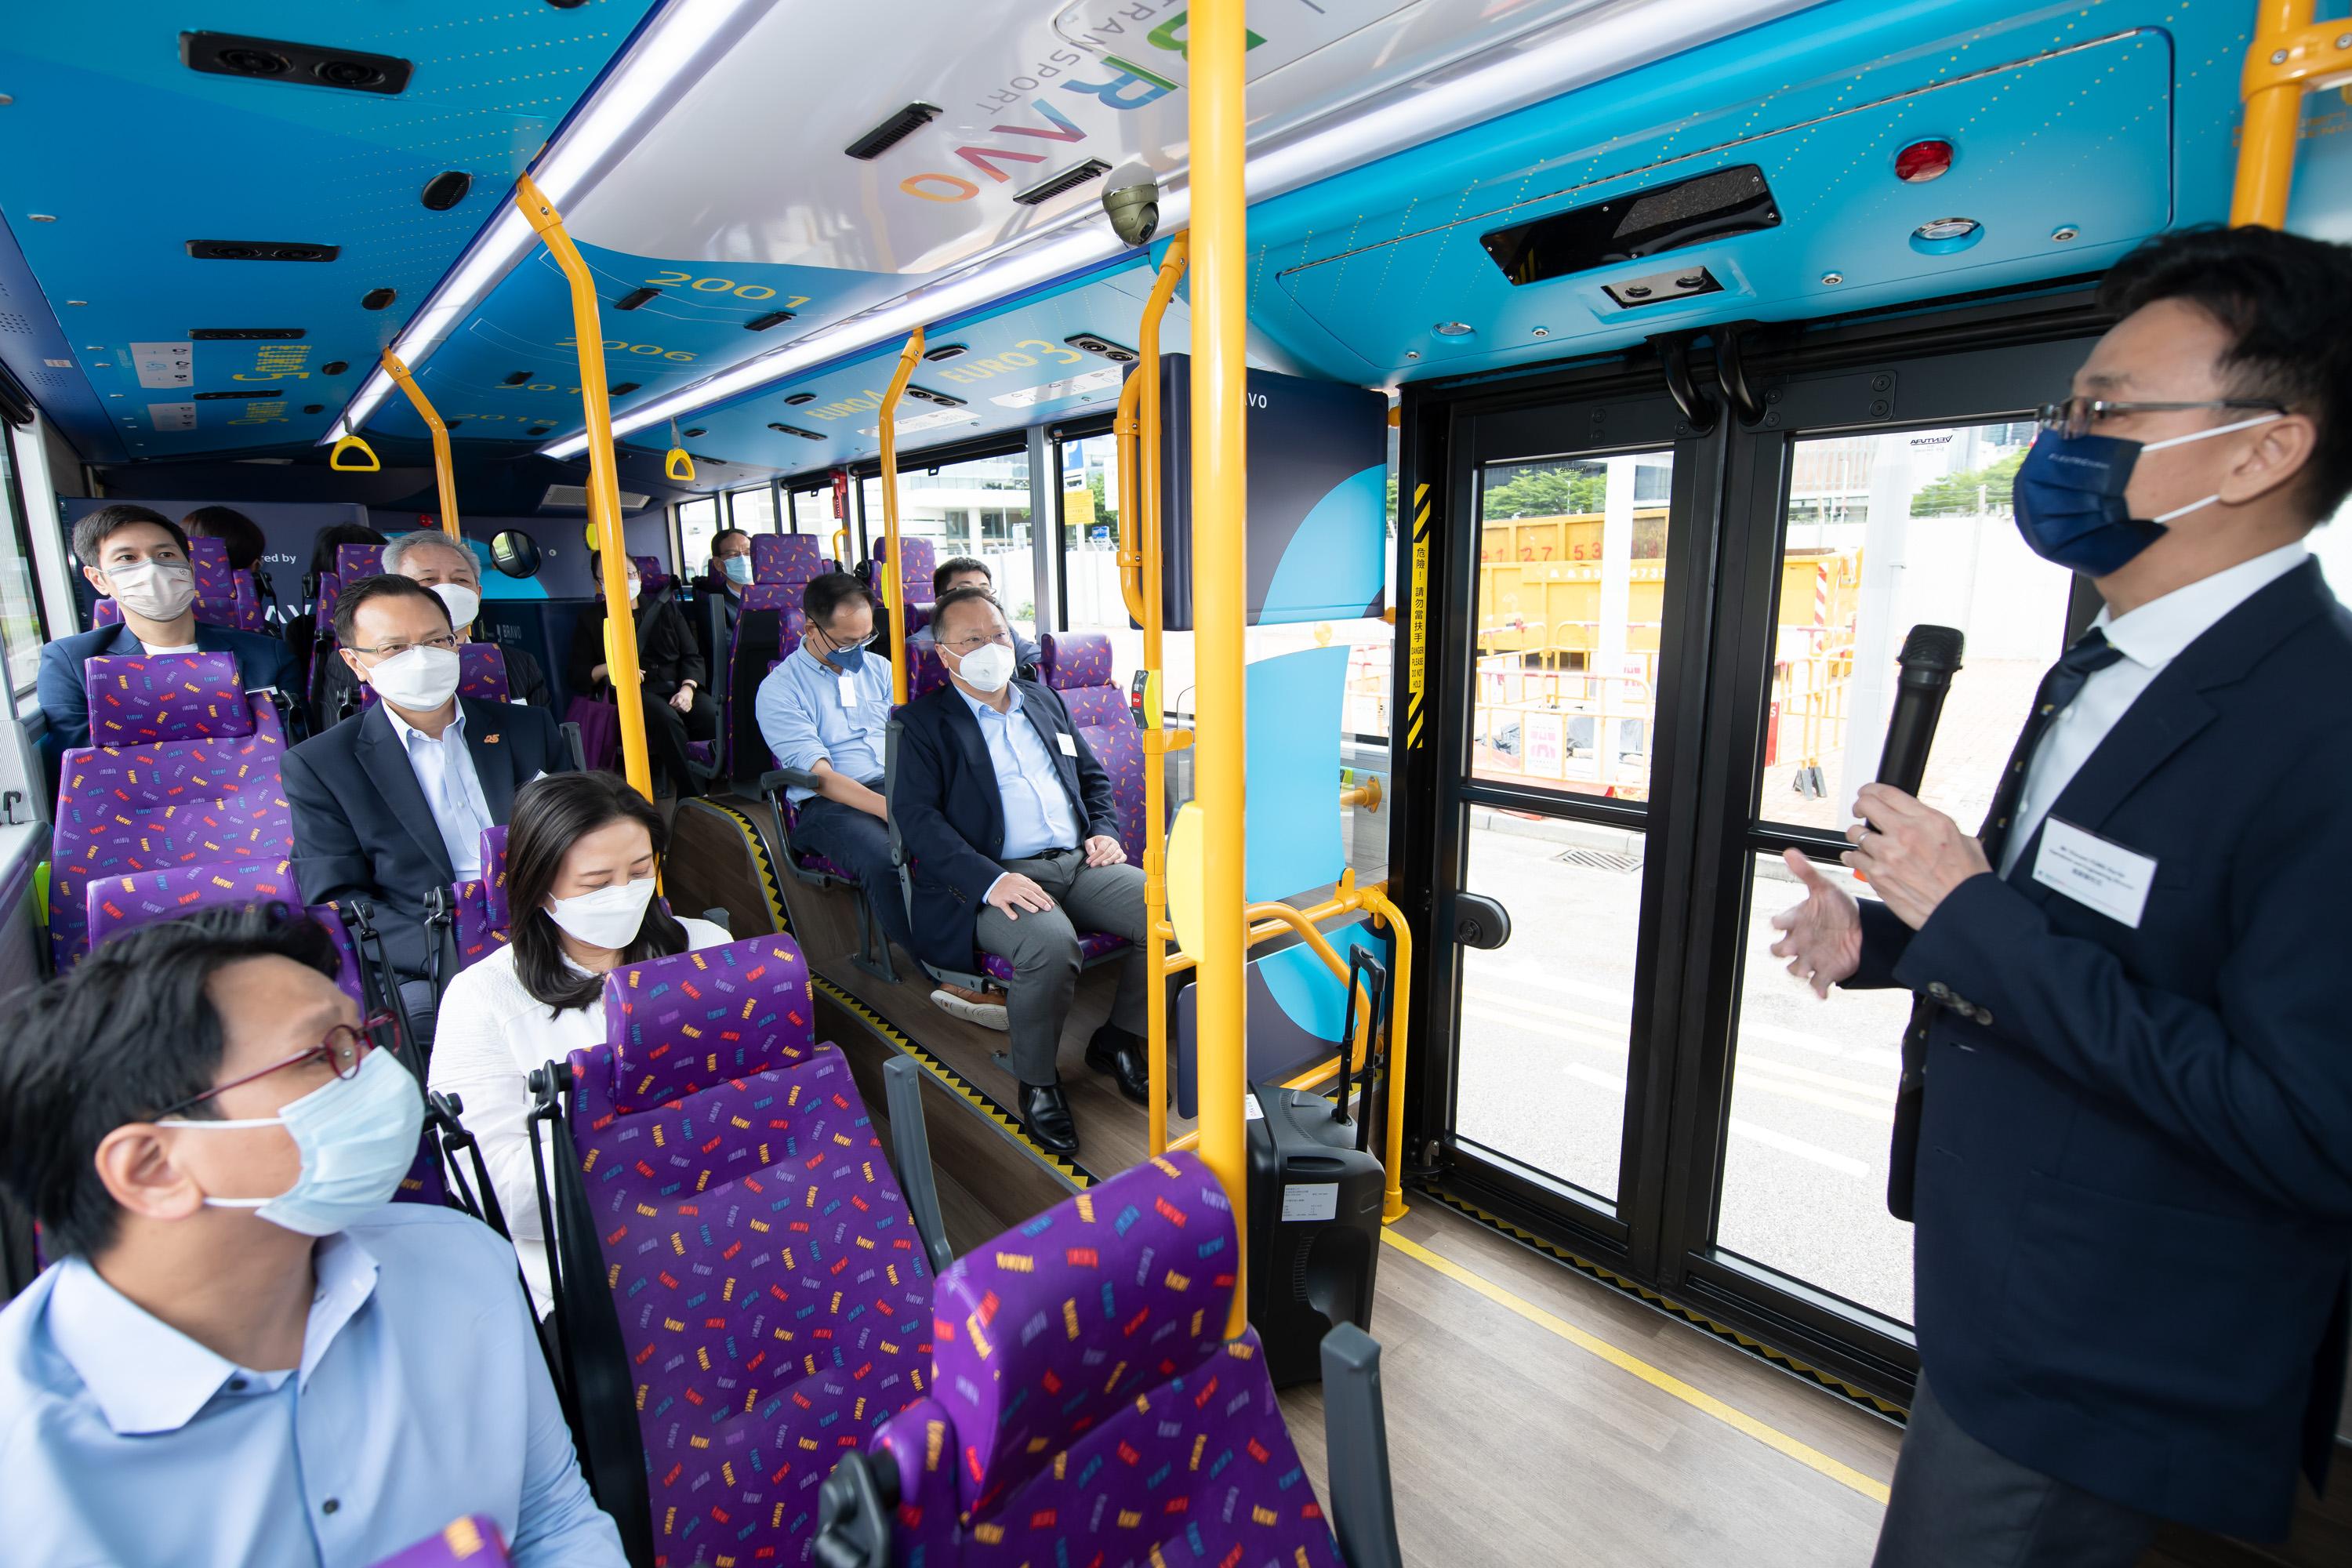 立法會交通事務委員會今日（八月十九日）參觀城巴有限公司（城巴）的設施。圖示立法會議員乘坐城巴雙層電能巴士，藉此體驗電能巴士的設備。